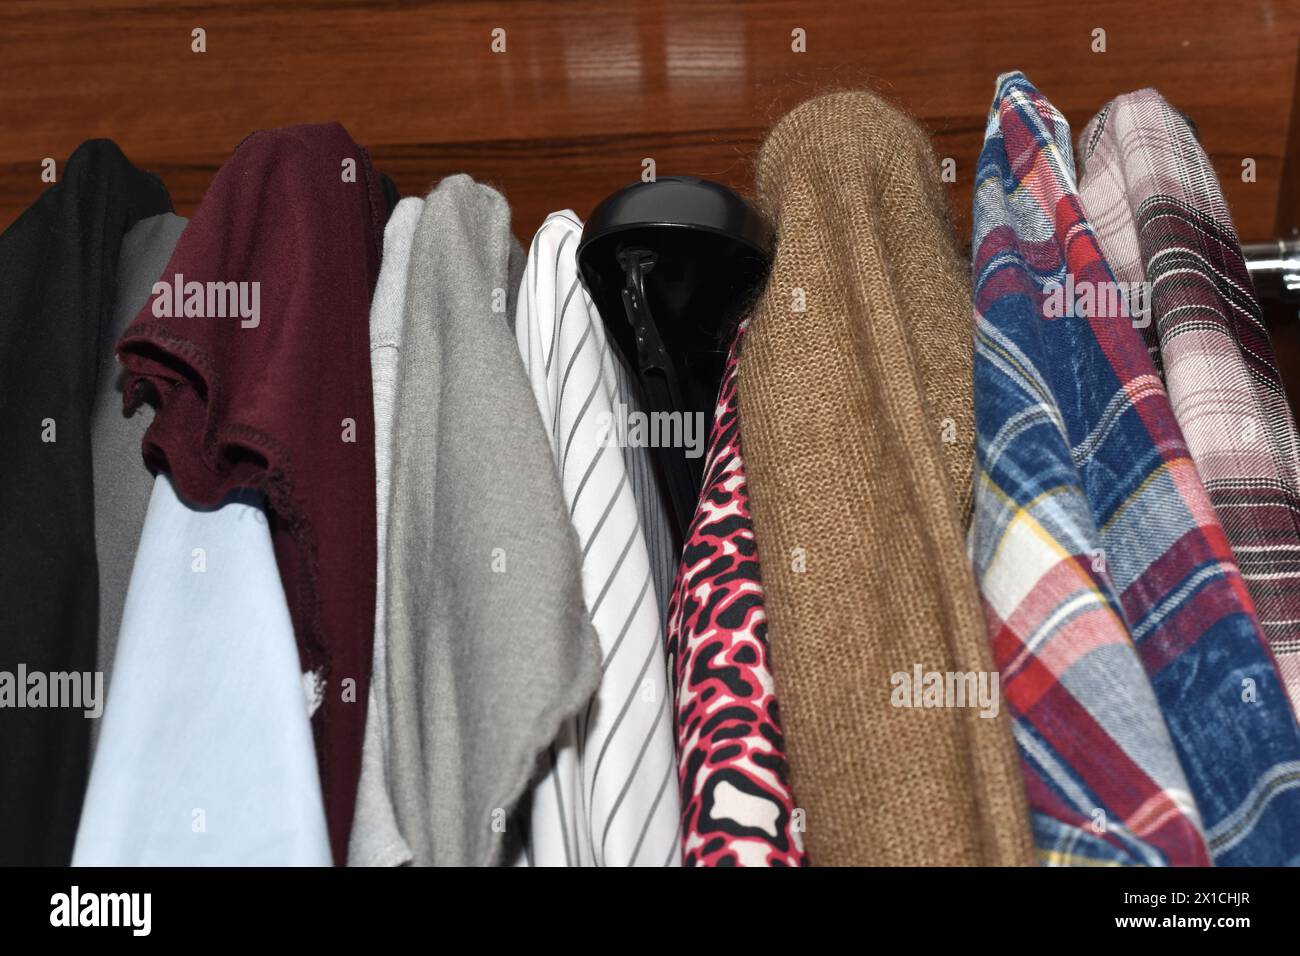 Die Art von Kleidung hängt fest an Kleiderbügeln im Schrank. Stockfoto